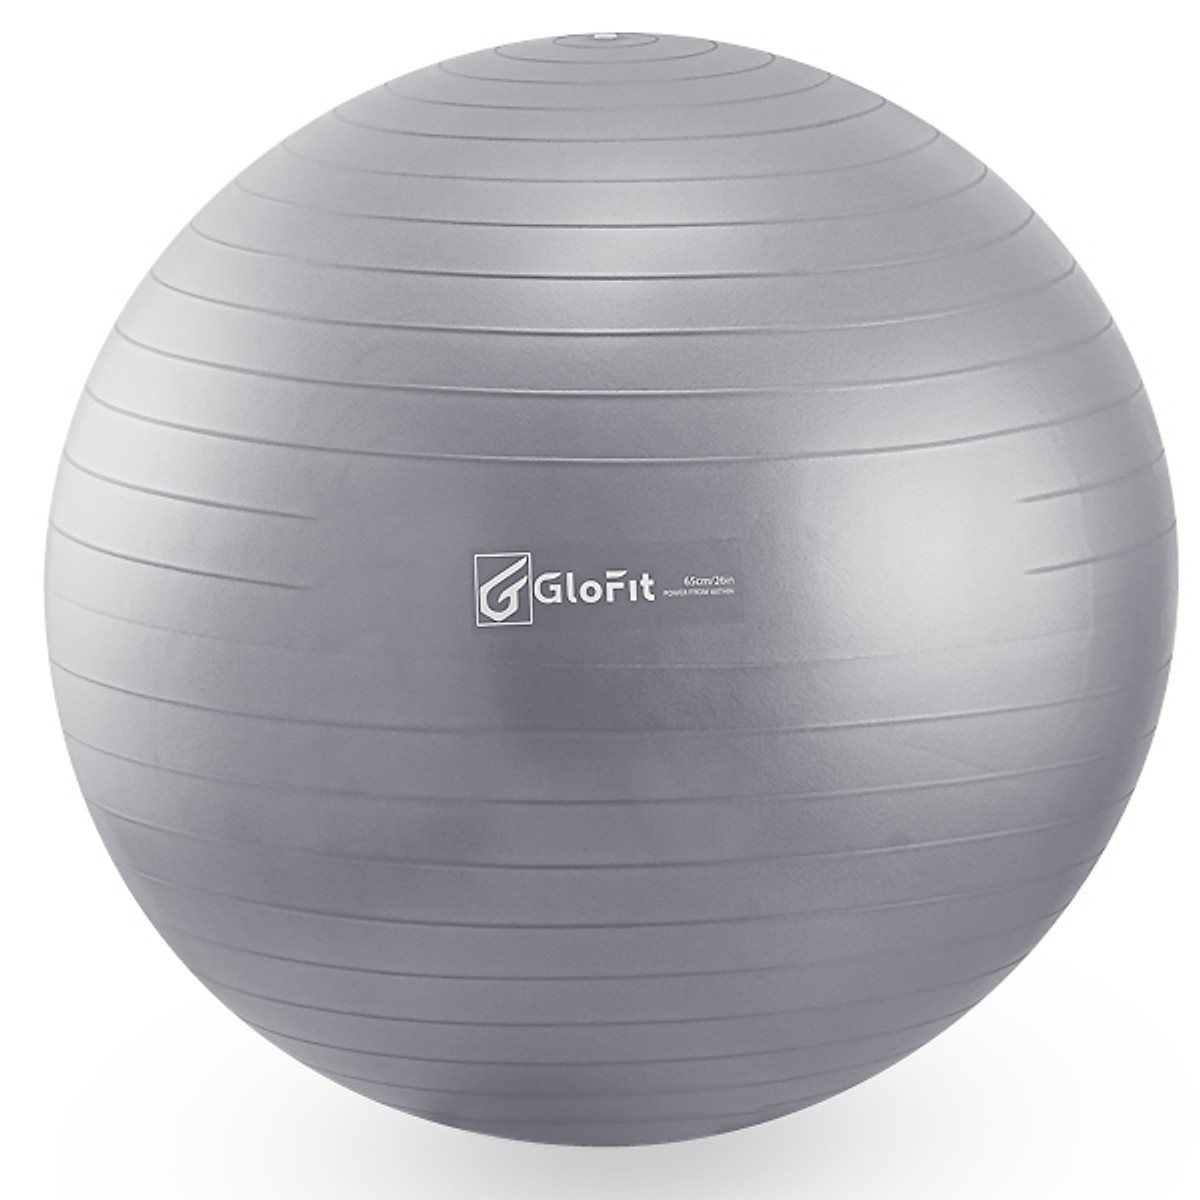 Bóng Tập Yoga - Bóng Tập Thể Hình Glofit GFY001 - Xám (Grey Yoga Ball)